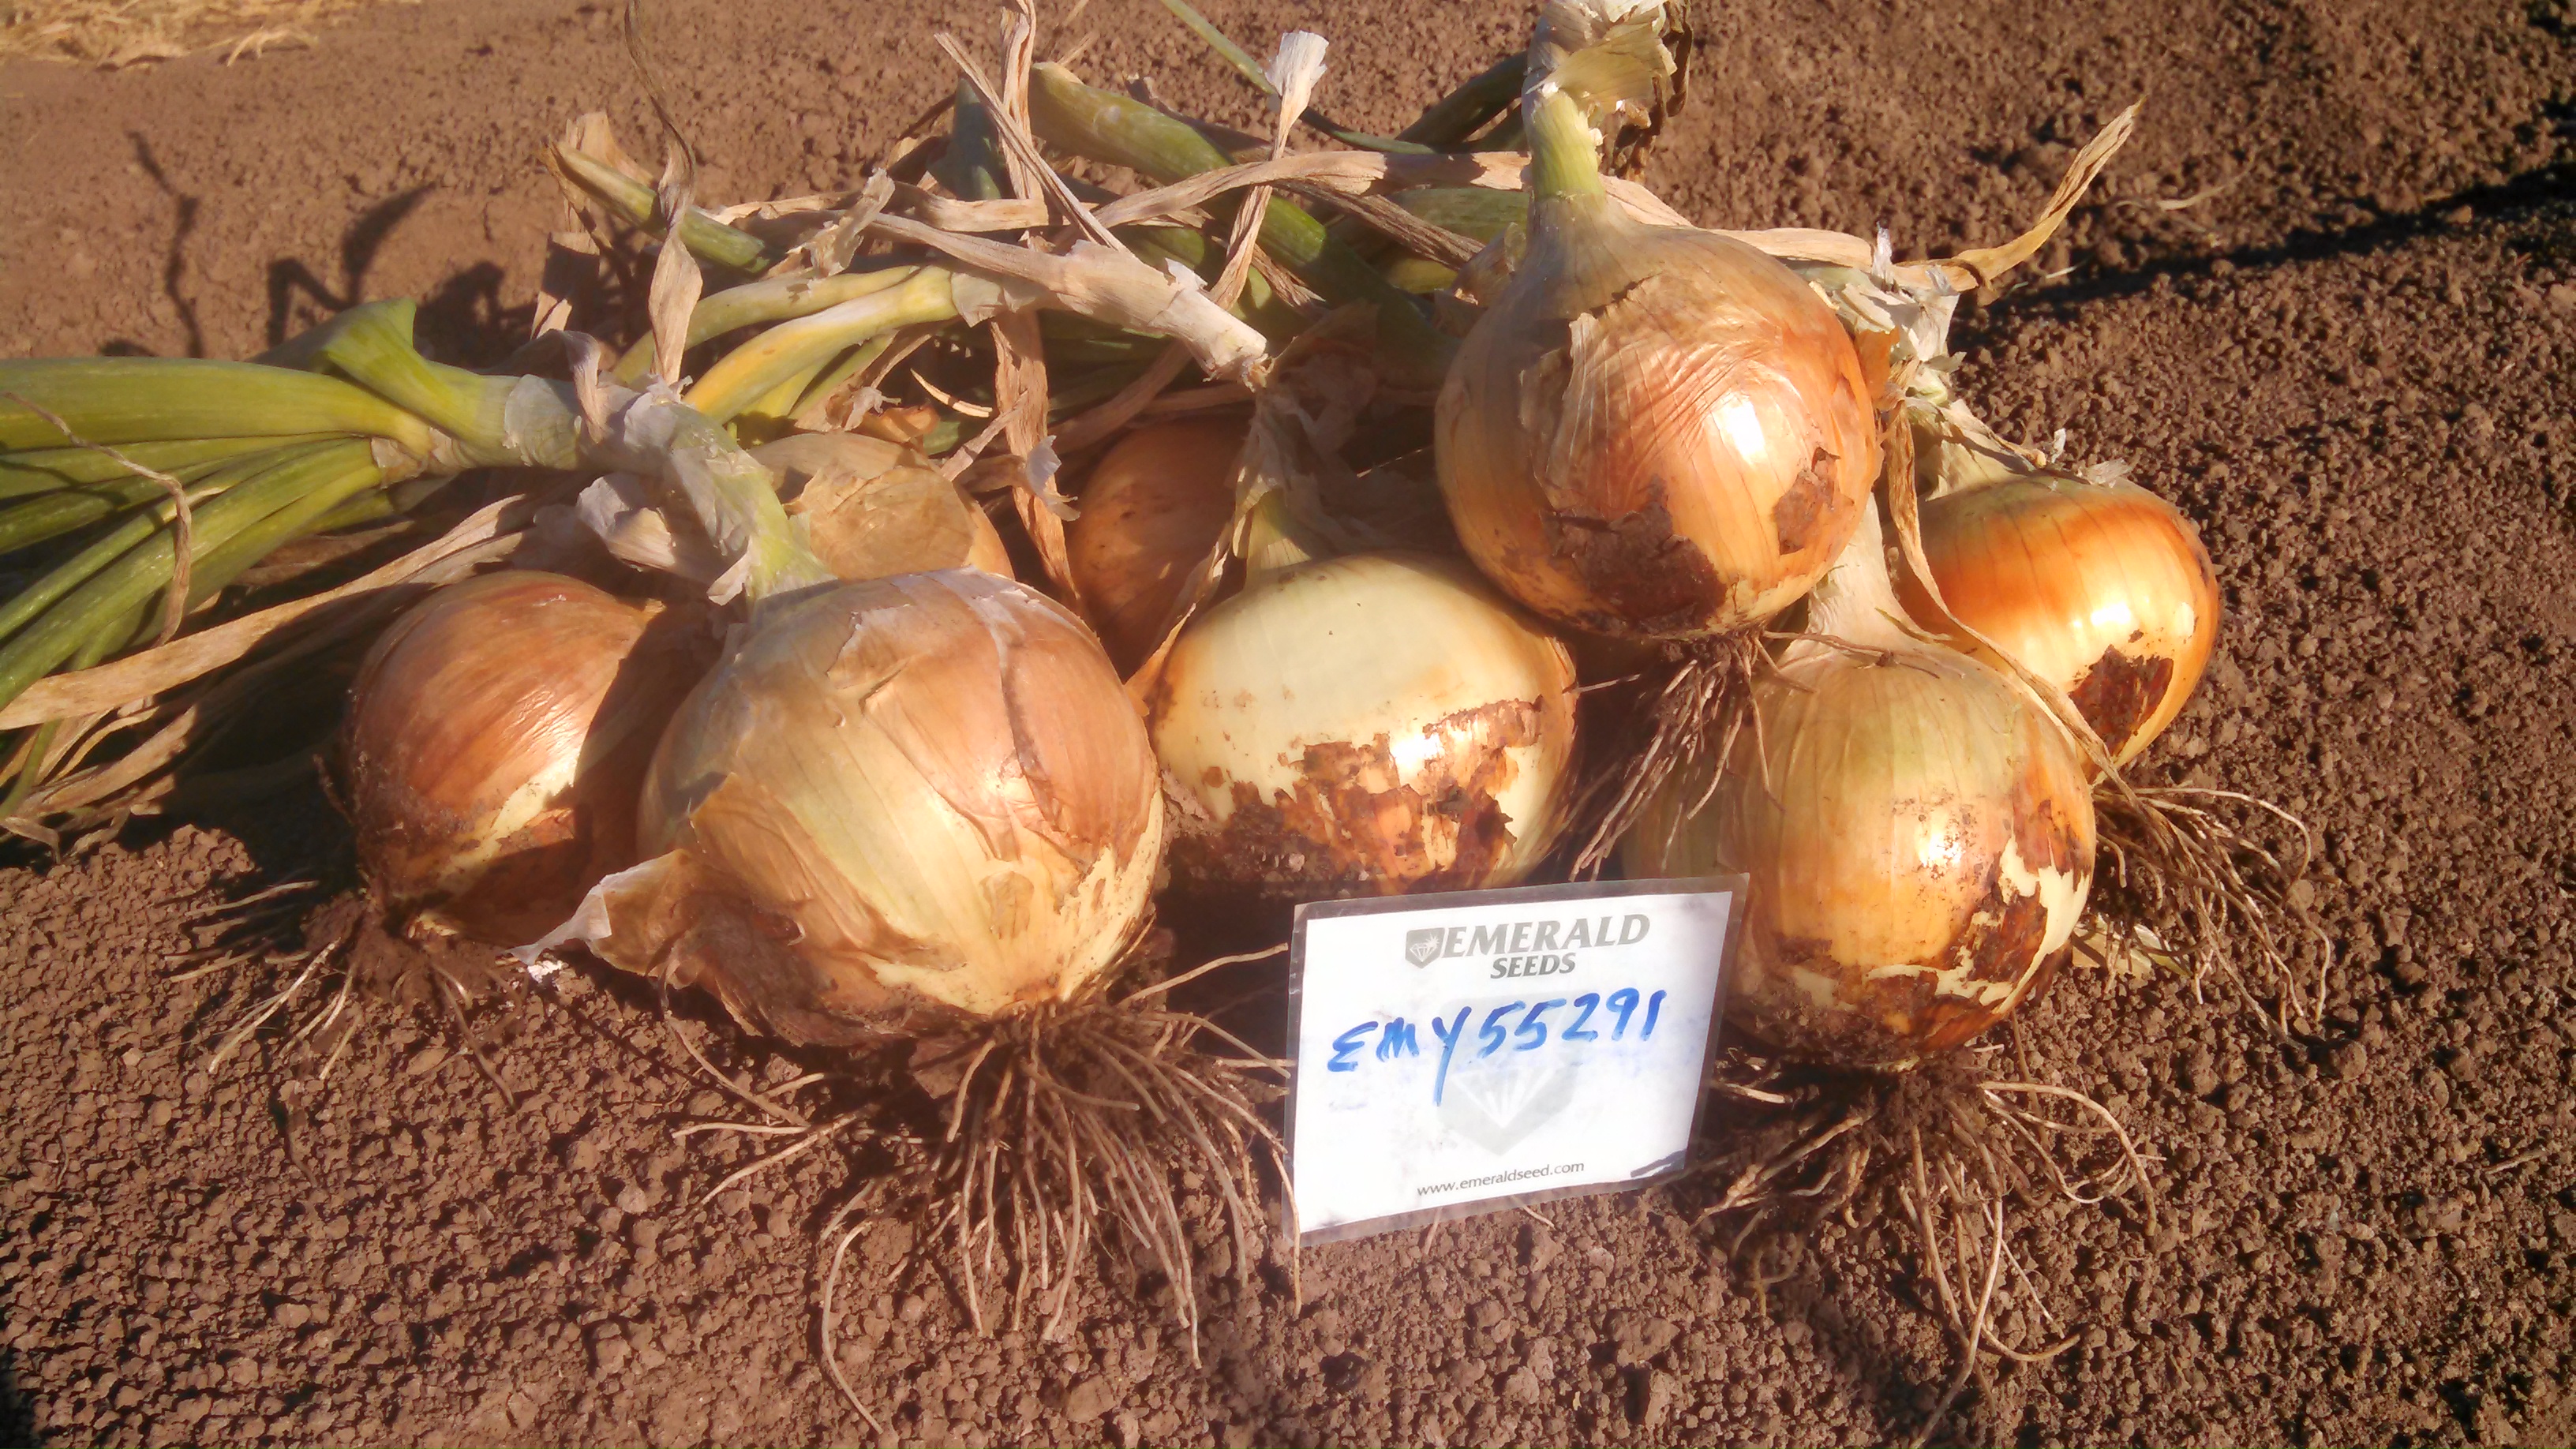 Emerald Seed, Inc. - Onion - EMY 55291- Hyb